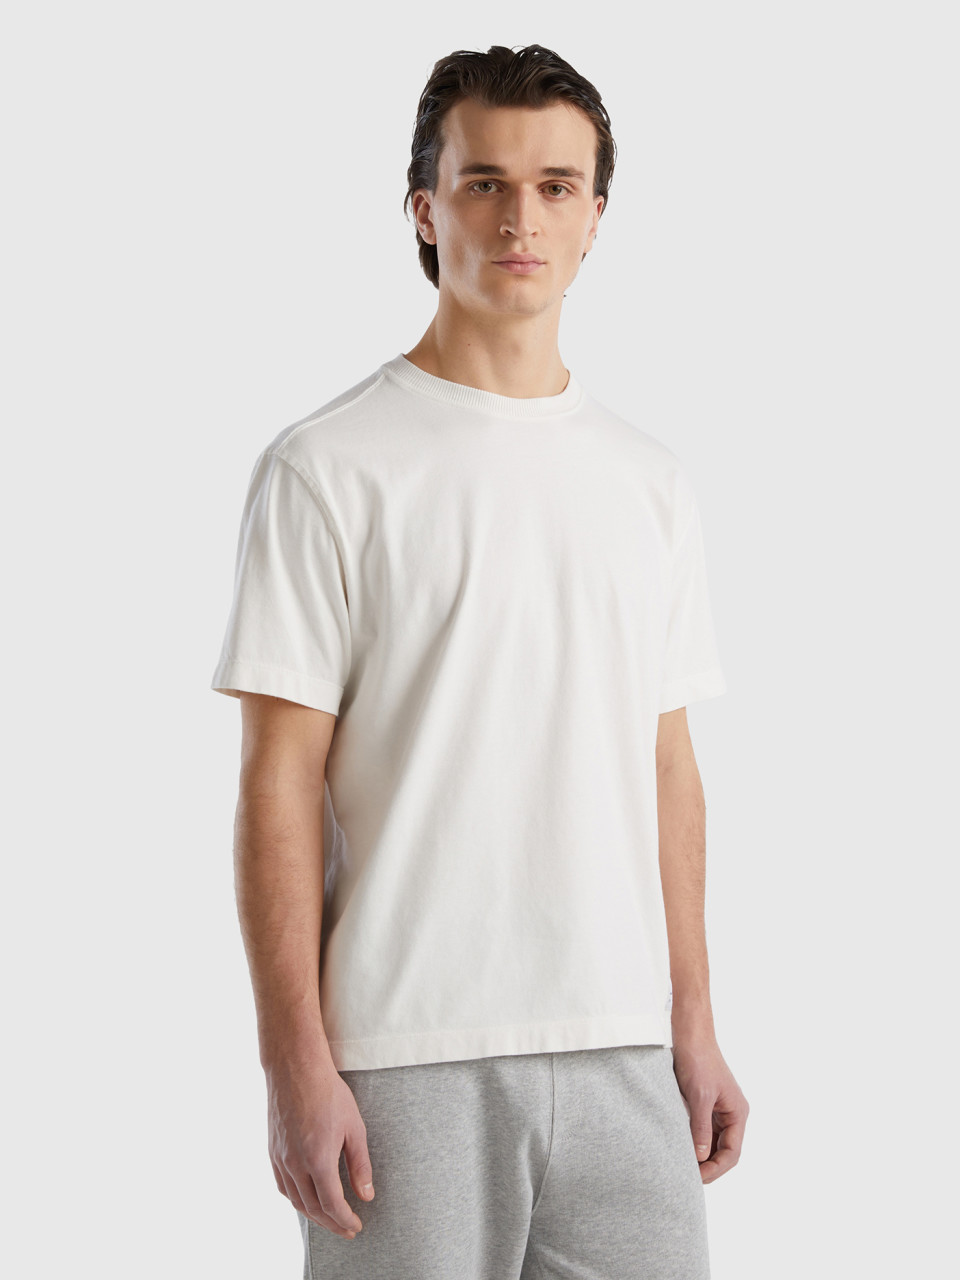 Benetton, T-shirt Girocollo 100% Cotone Bio, Bianco Panna, Uomo